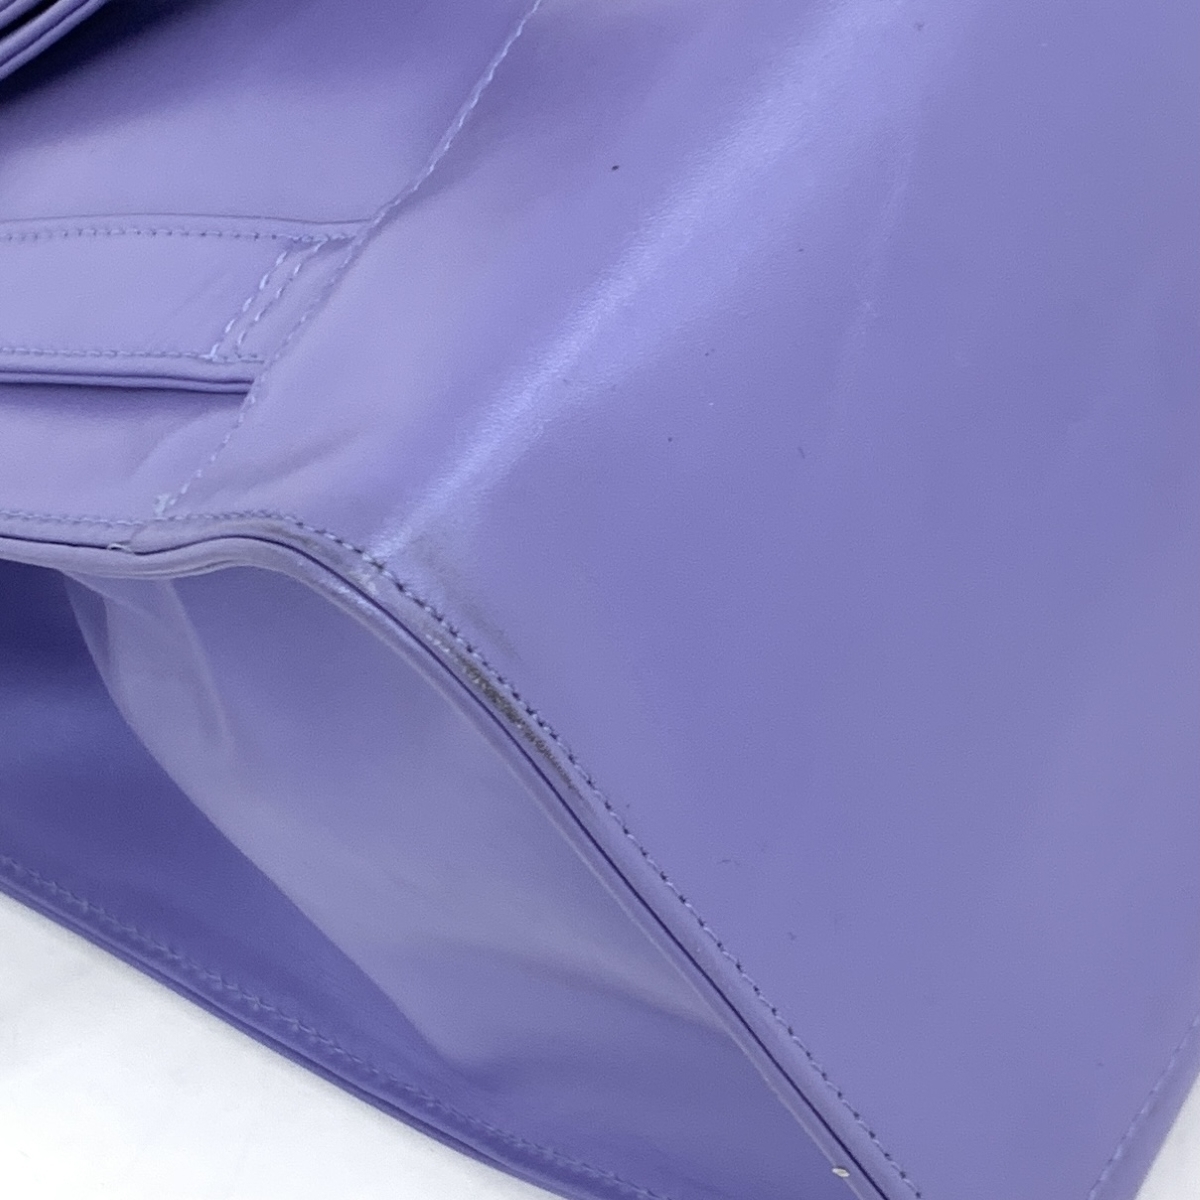  хороший *DKNY Donna Karan New York рюкзак * лиловый кожа женский рюкзак bag сумка 